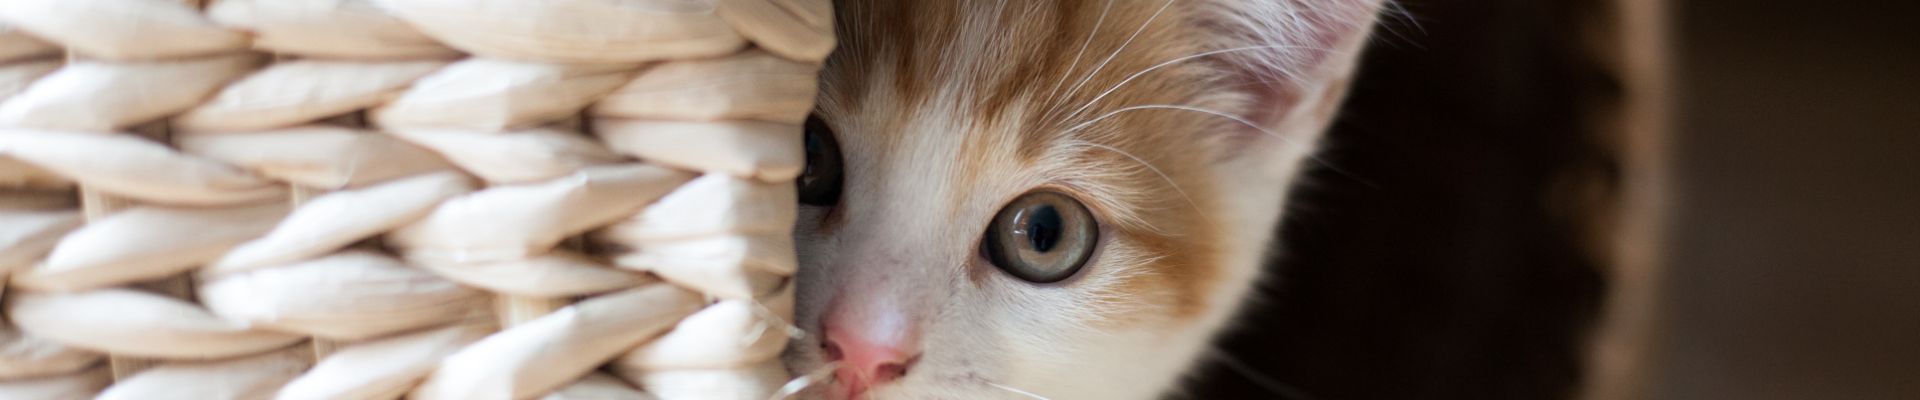 gatito naranja asustado oculto en una cesta